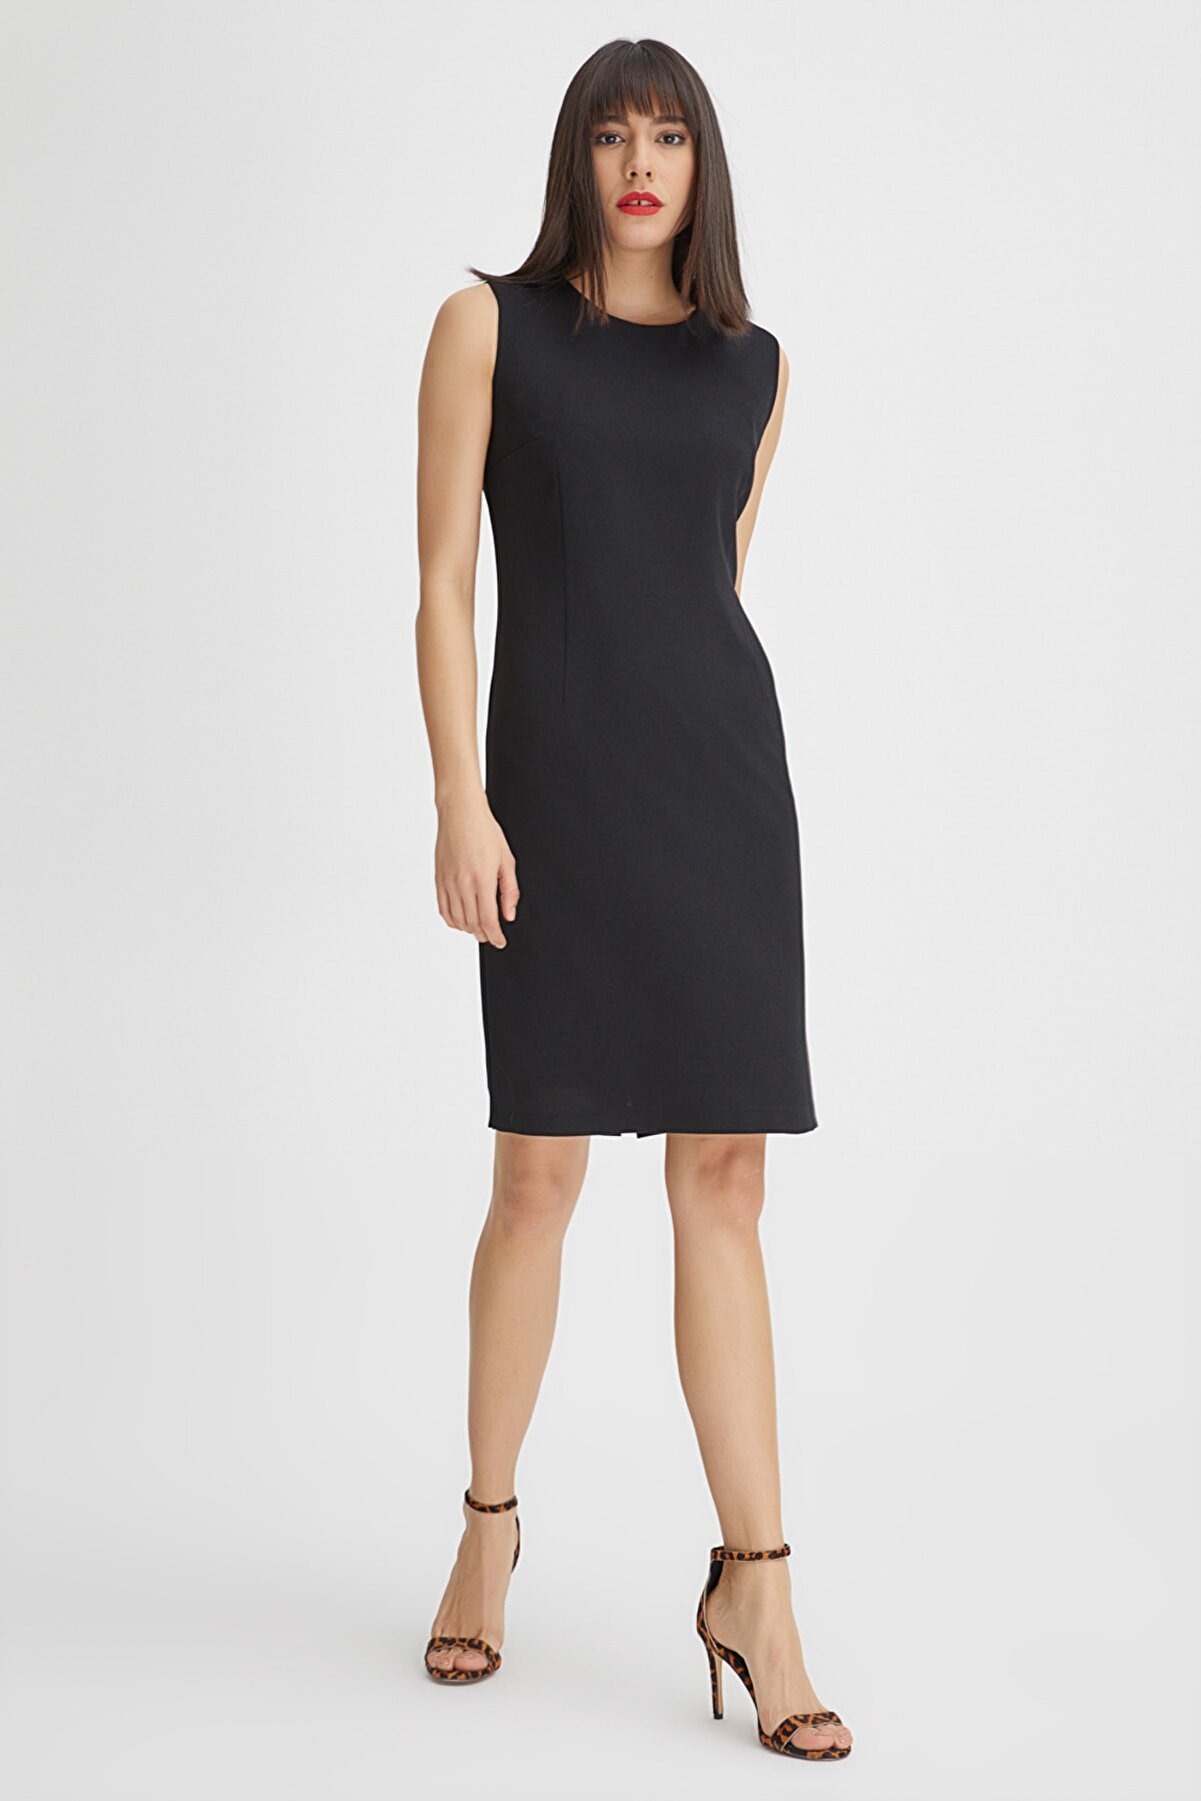 Gusto Kadın Siyah Kolsuz Klasik Jile Elbise 20YG001306